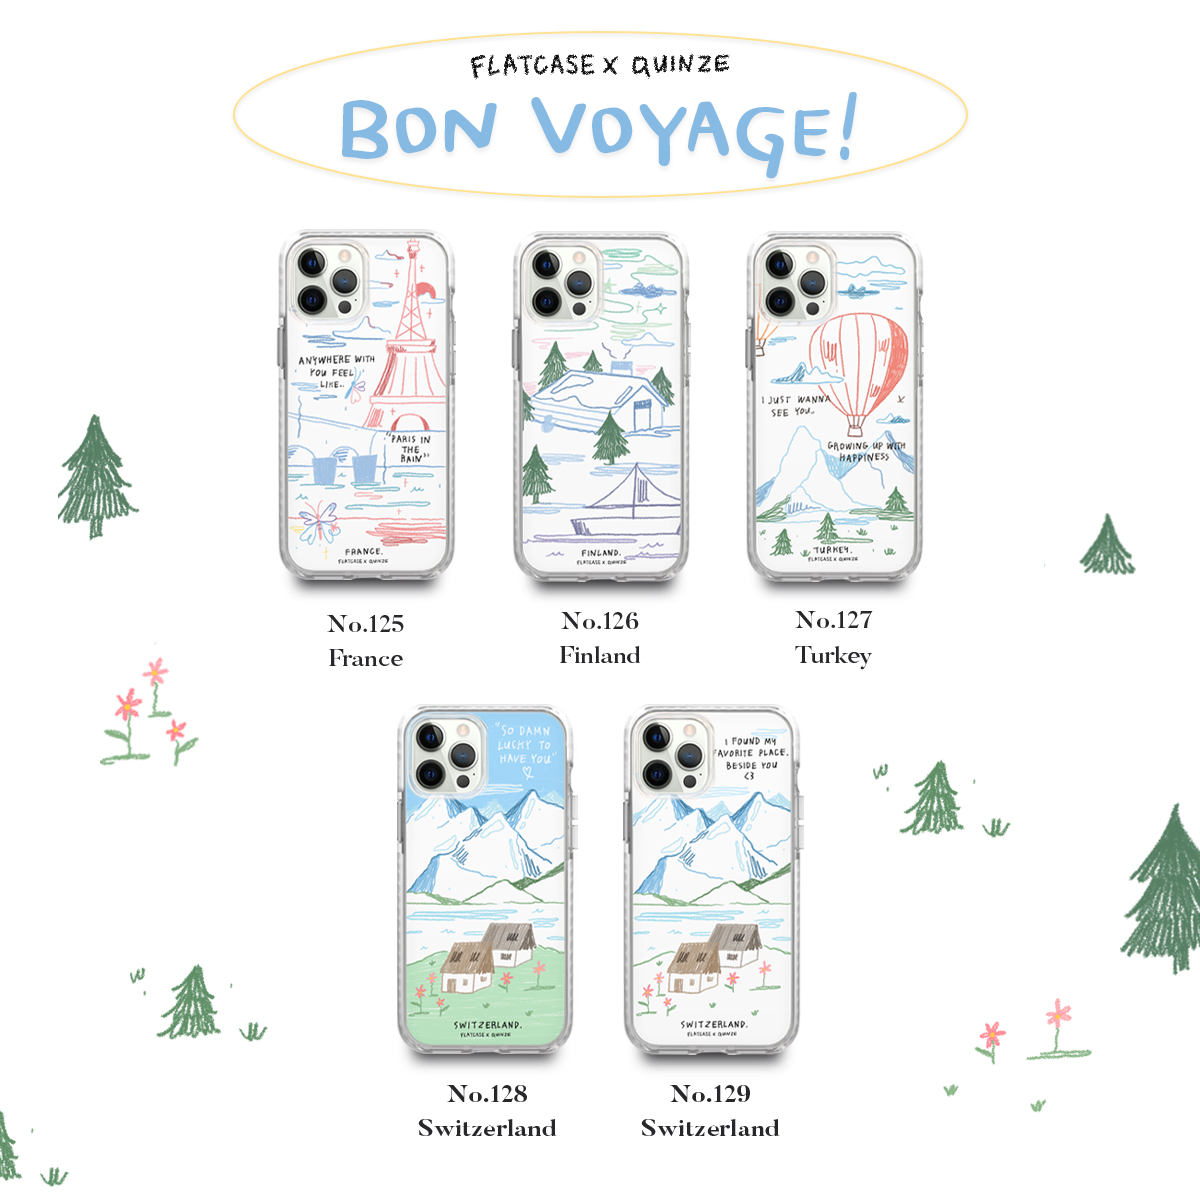 Bon Voyage! (flatcase x quinze)